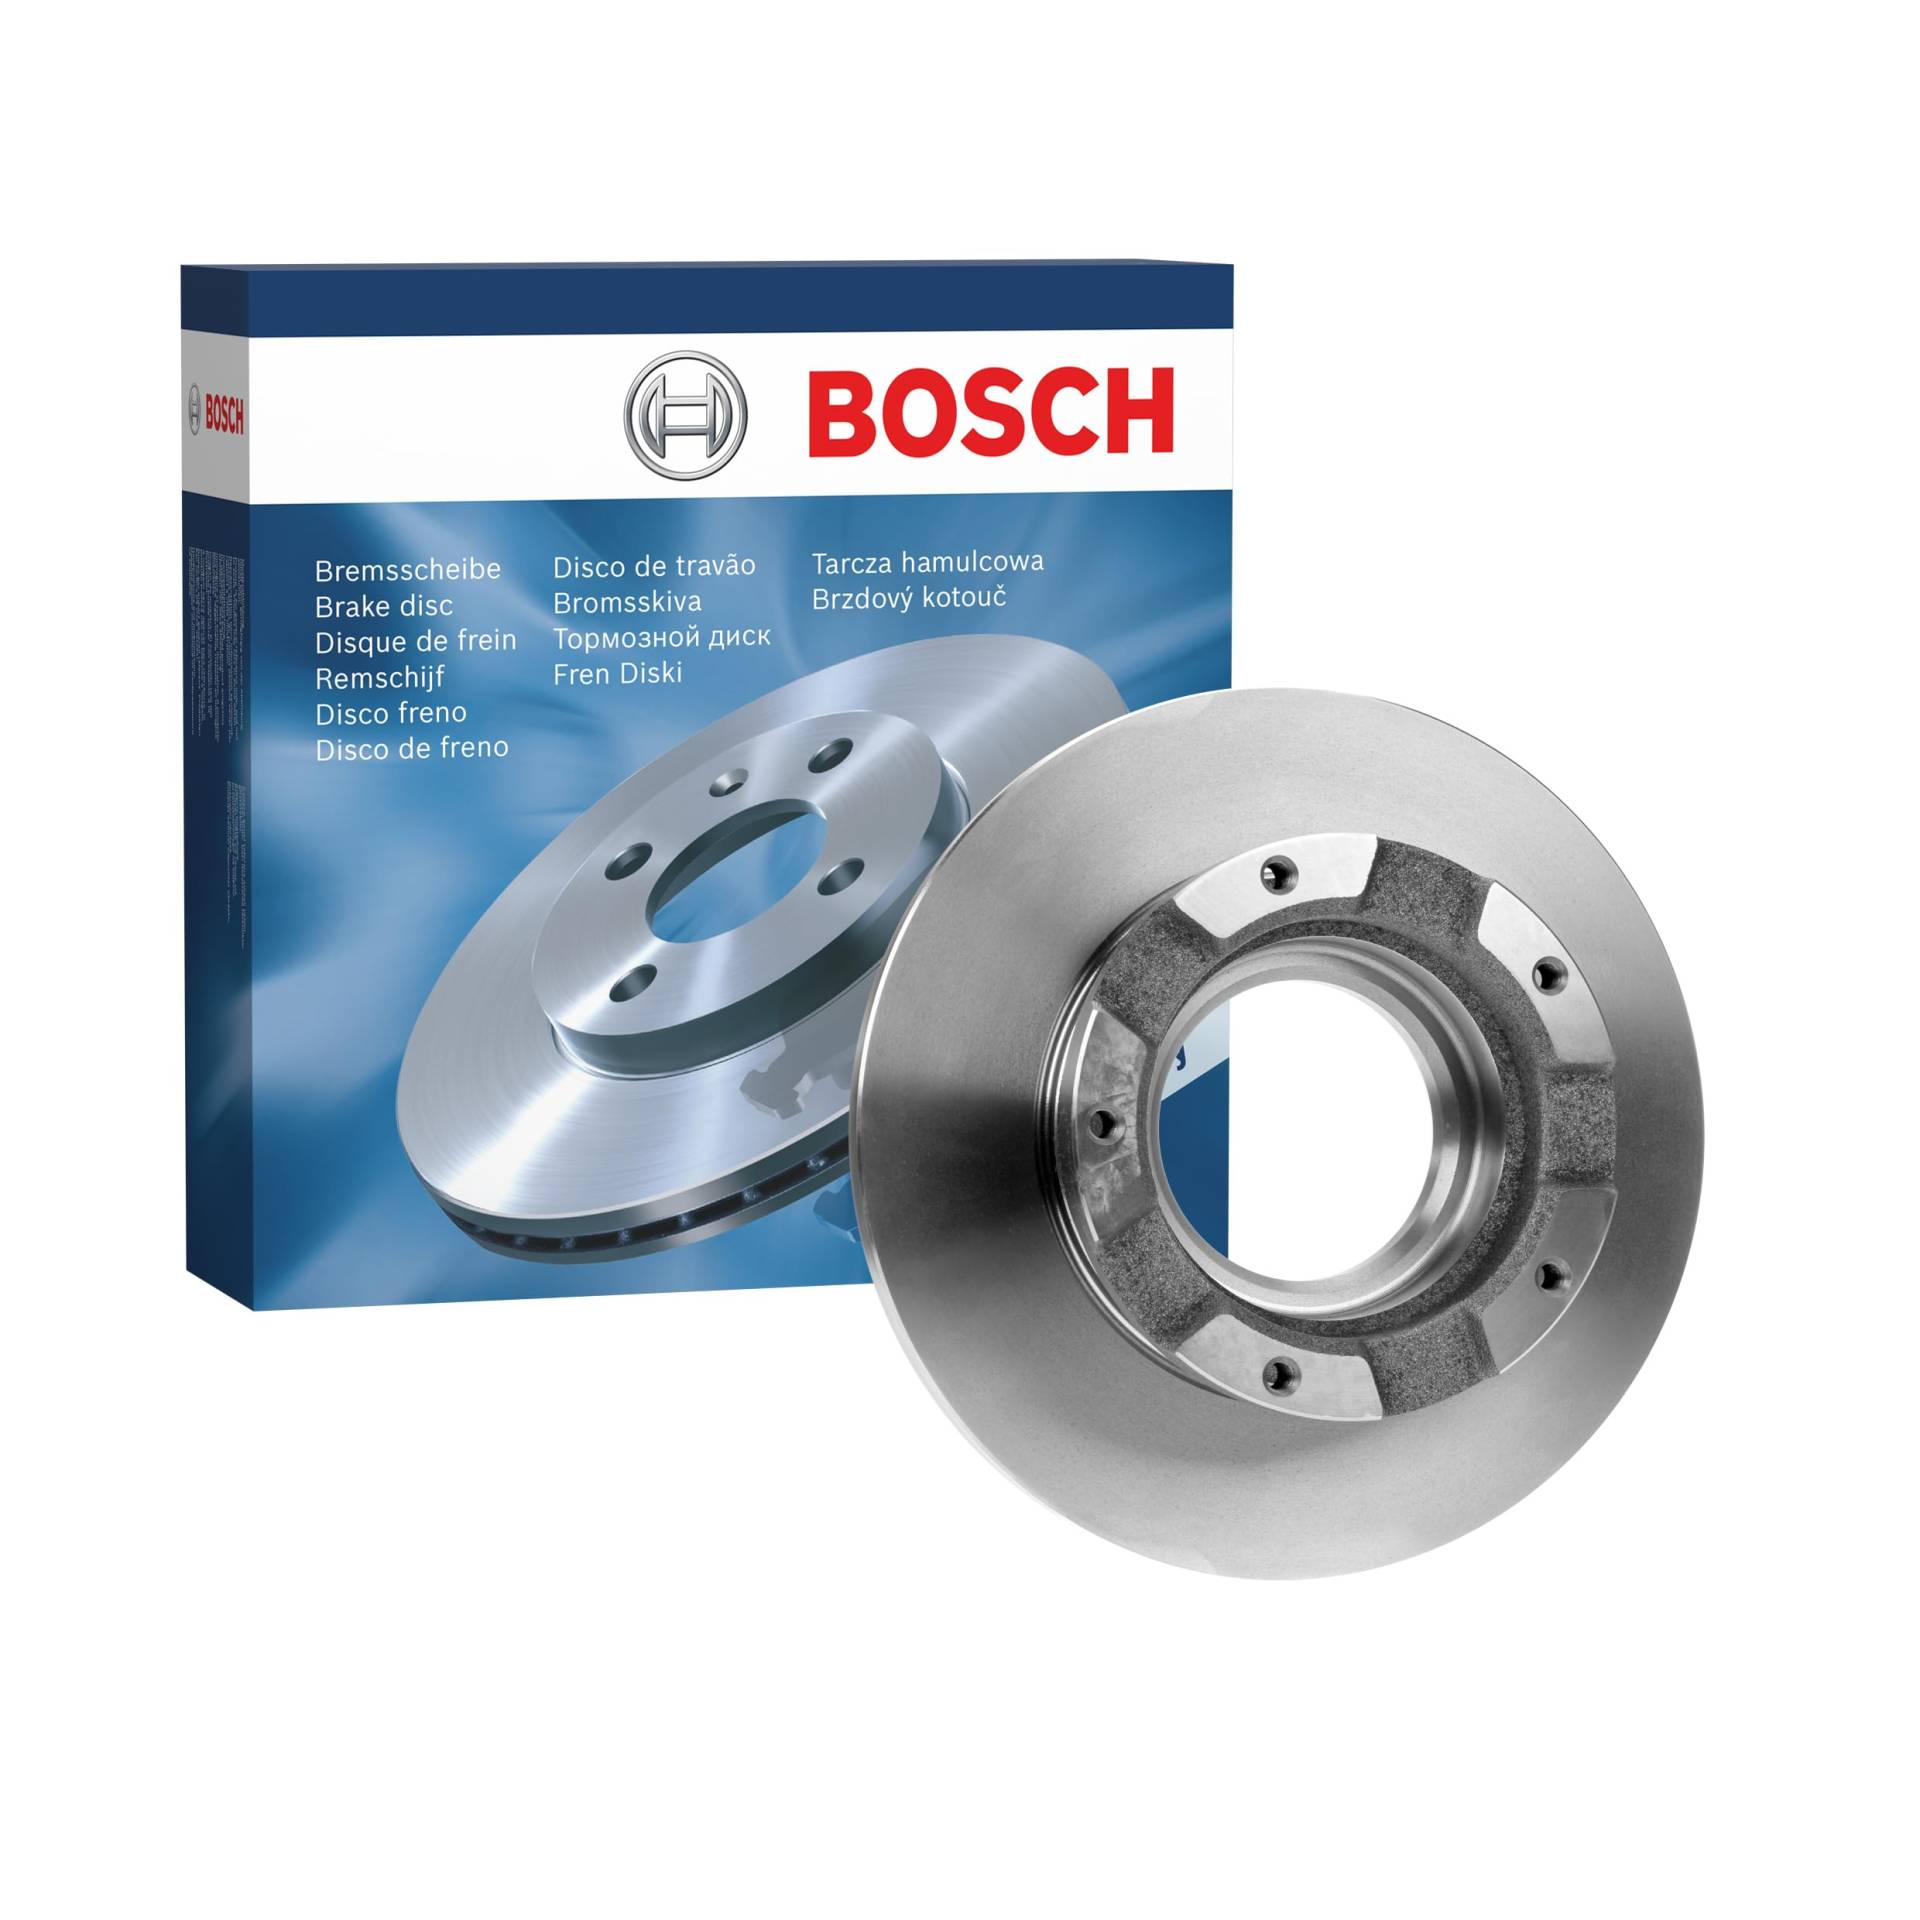 Bosch BD2122 Bremsscheiben - Hinterachse - ECE-R90 Zertifizierung - eine Bremsscheibe von Bosch Automotive